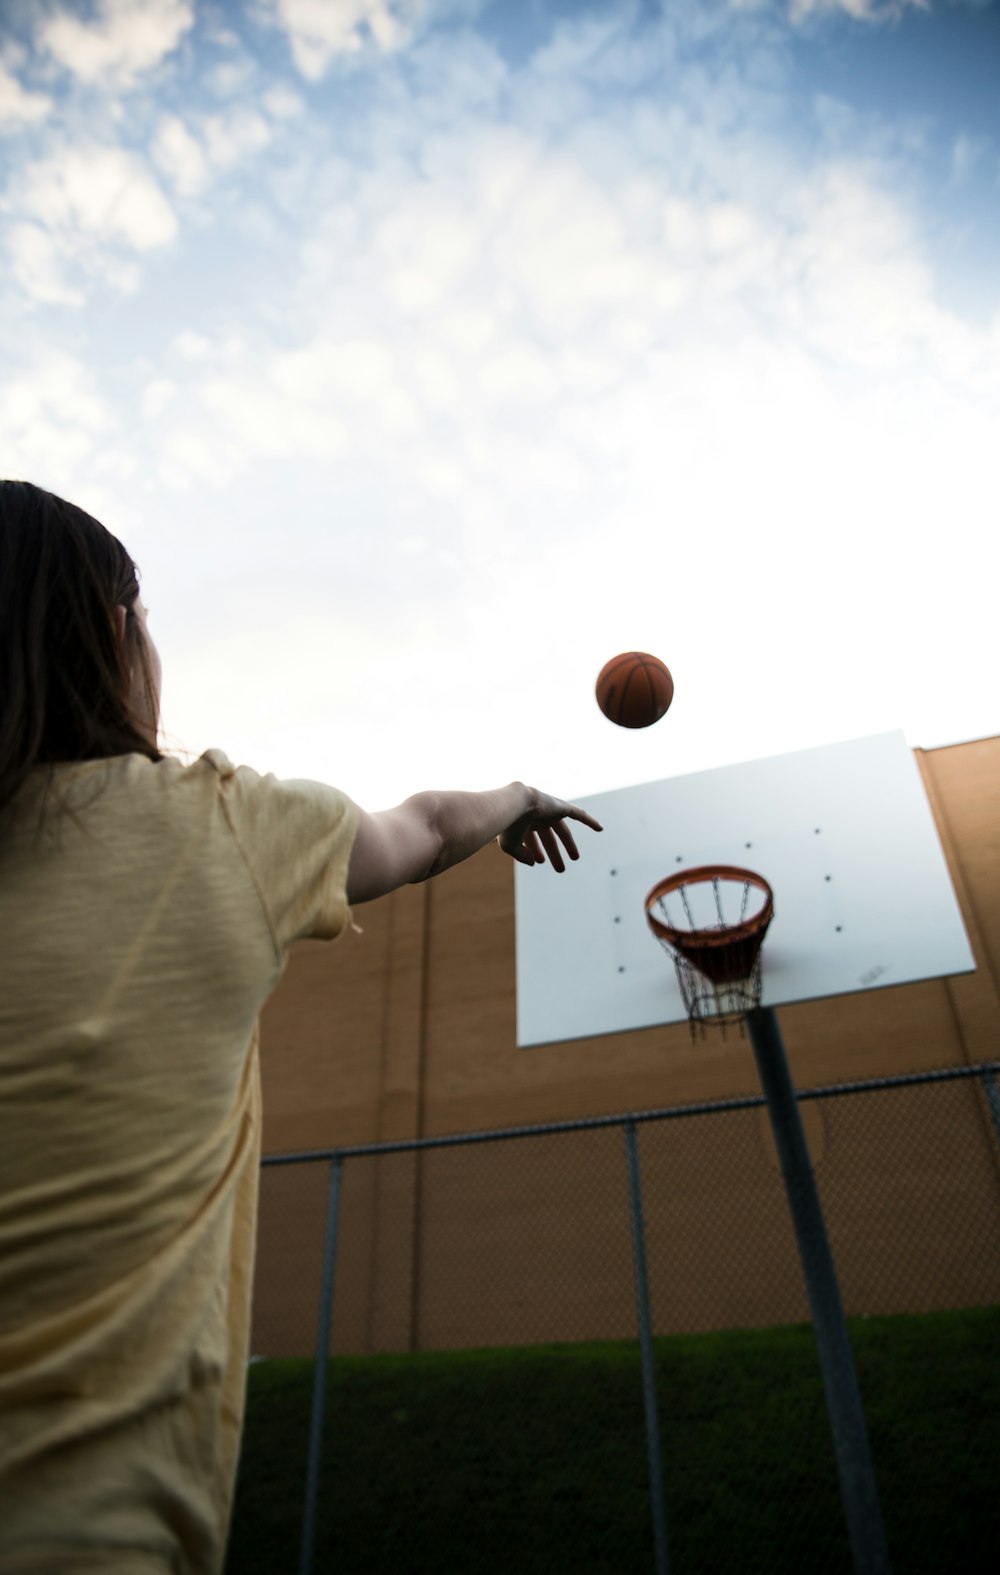 Femme en chemise blanche tenant un ballon de basket-ball